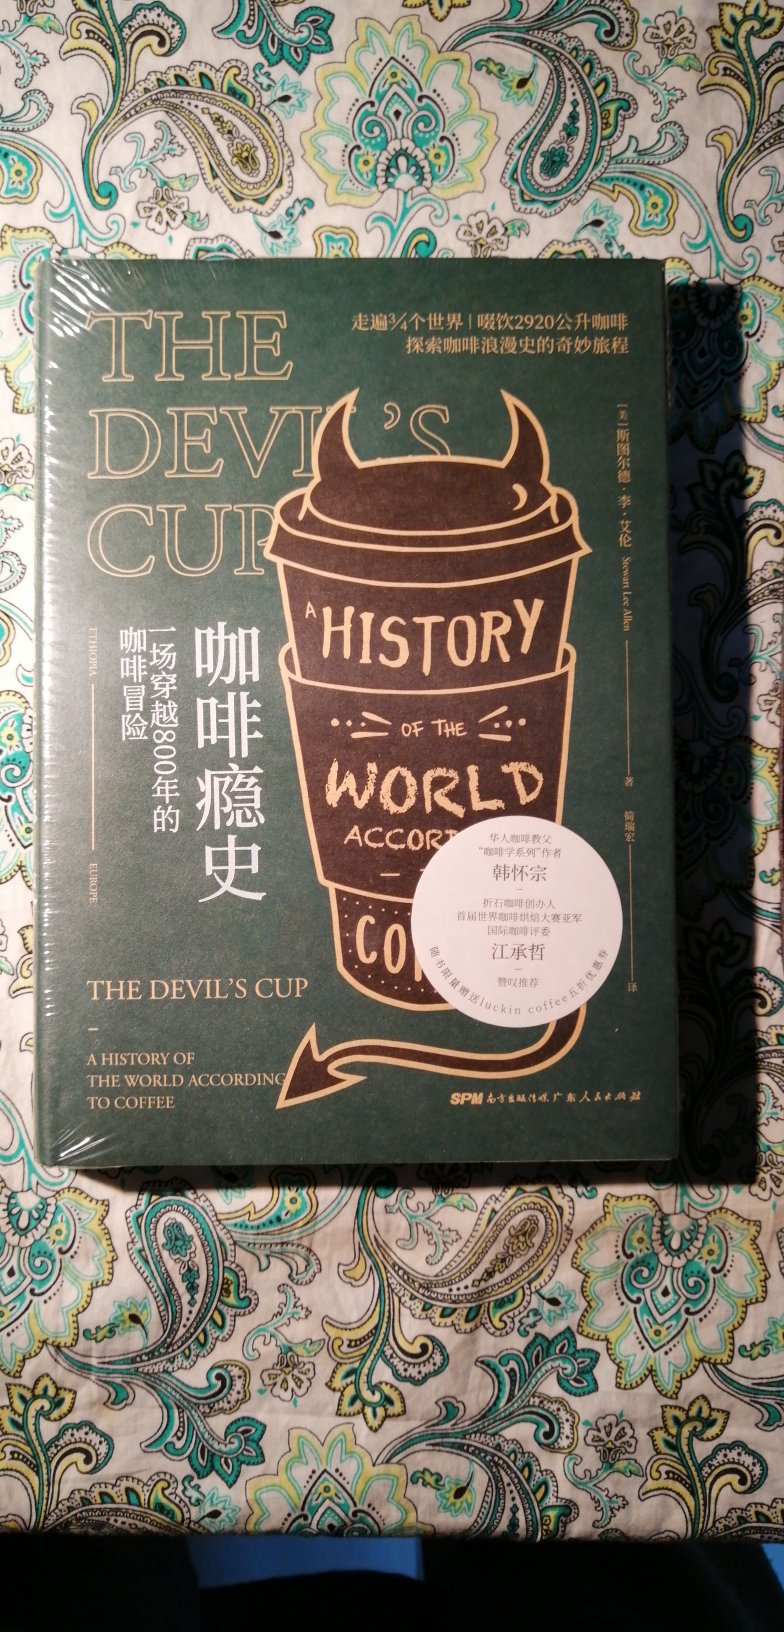 这本书包装精美，无论是插画还是内容都很丰富。这让我不喜欢读历史的人多添加了很多乐趣。只可惜，唉?，说好的赠品呢？咖啡呢？哈哈哈请给我一个合理的解释。